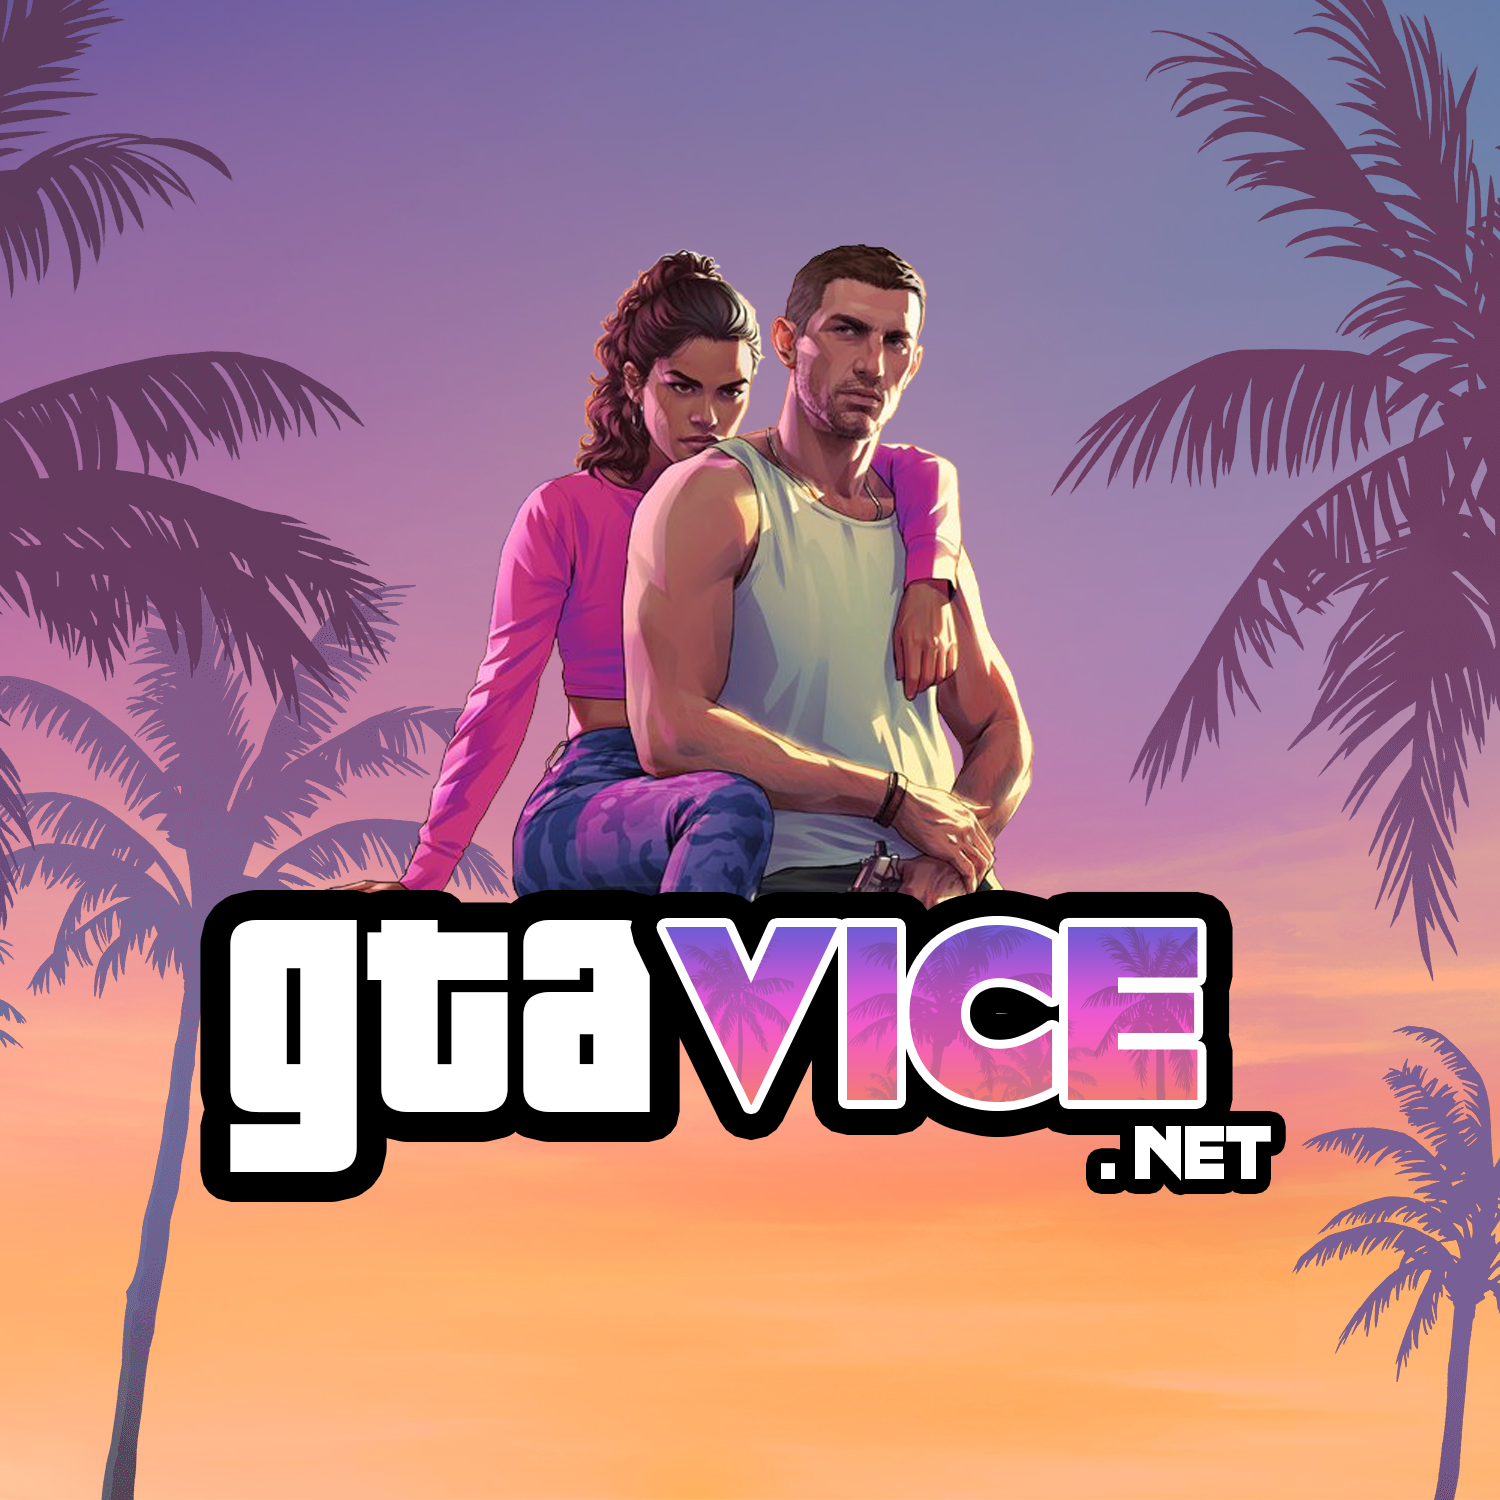 Cadê o Game - Game - Grand Theft Auto : San Andreas